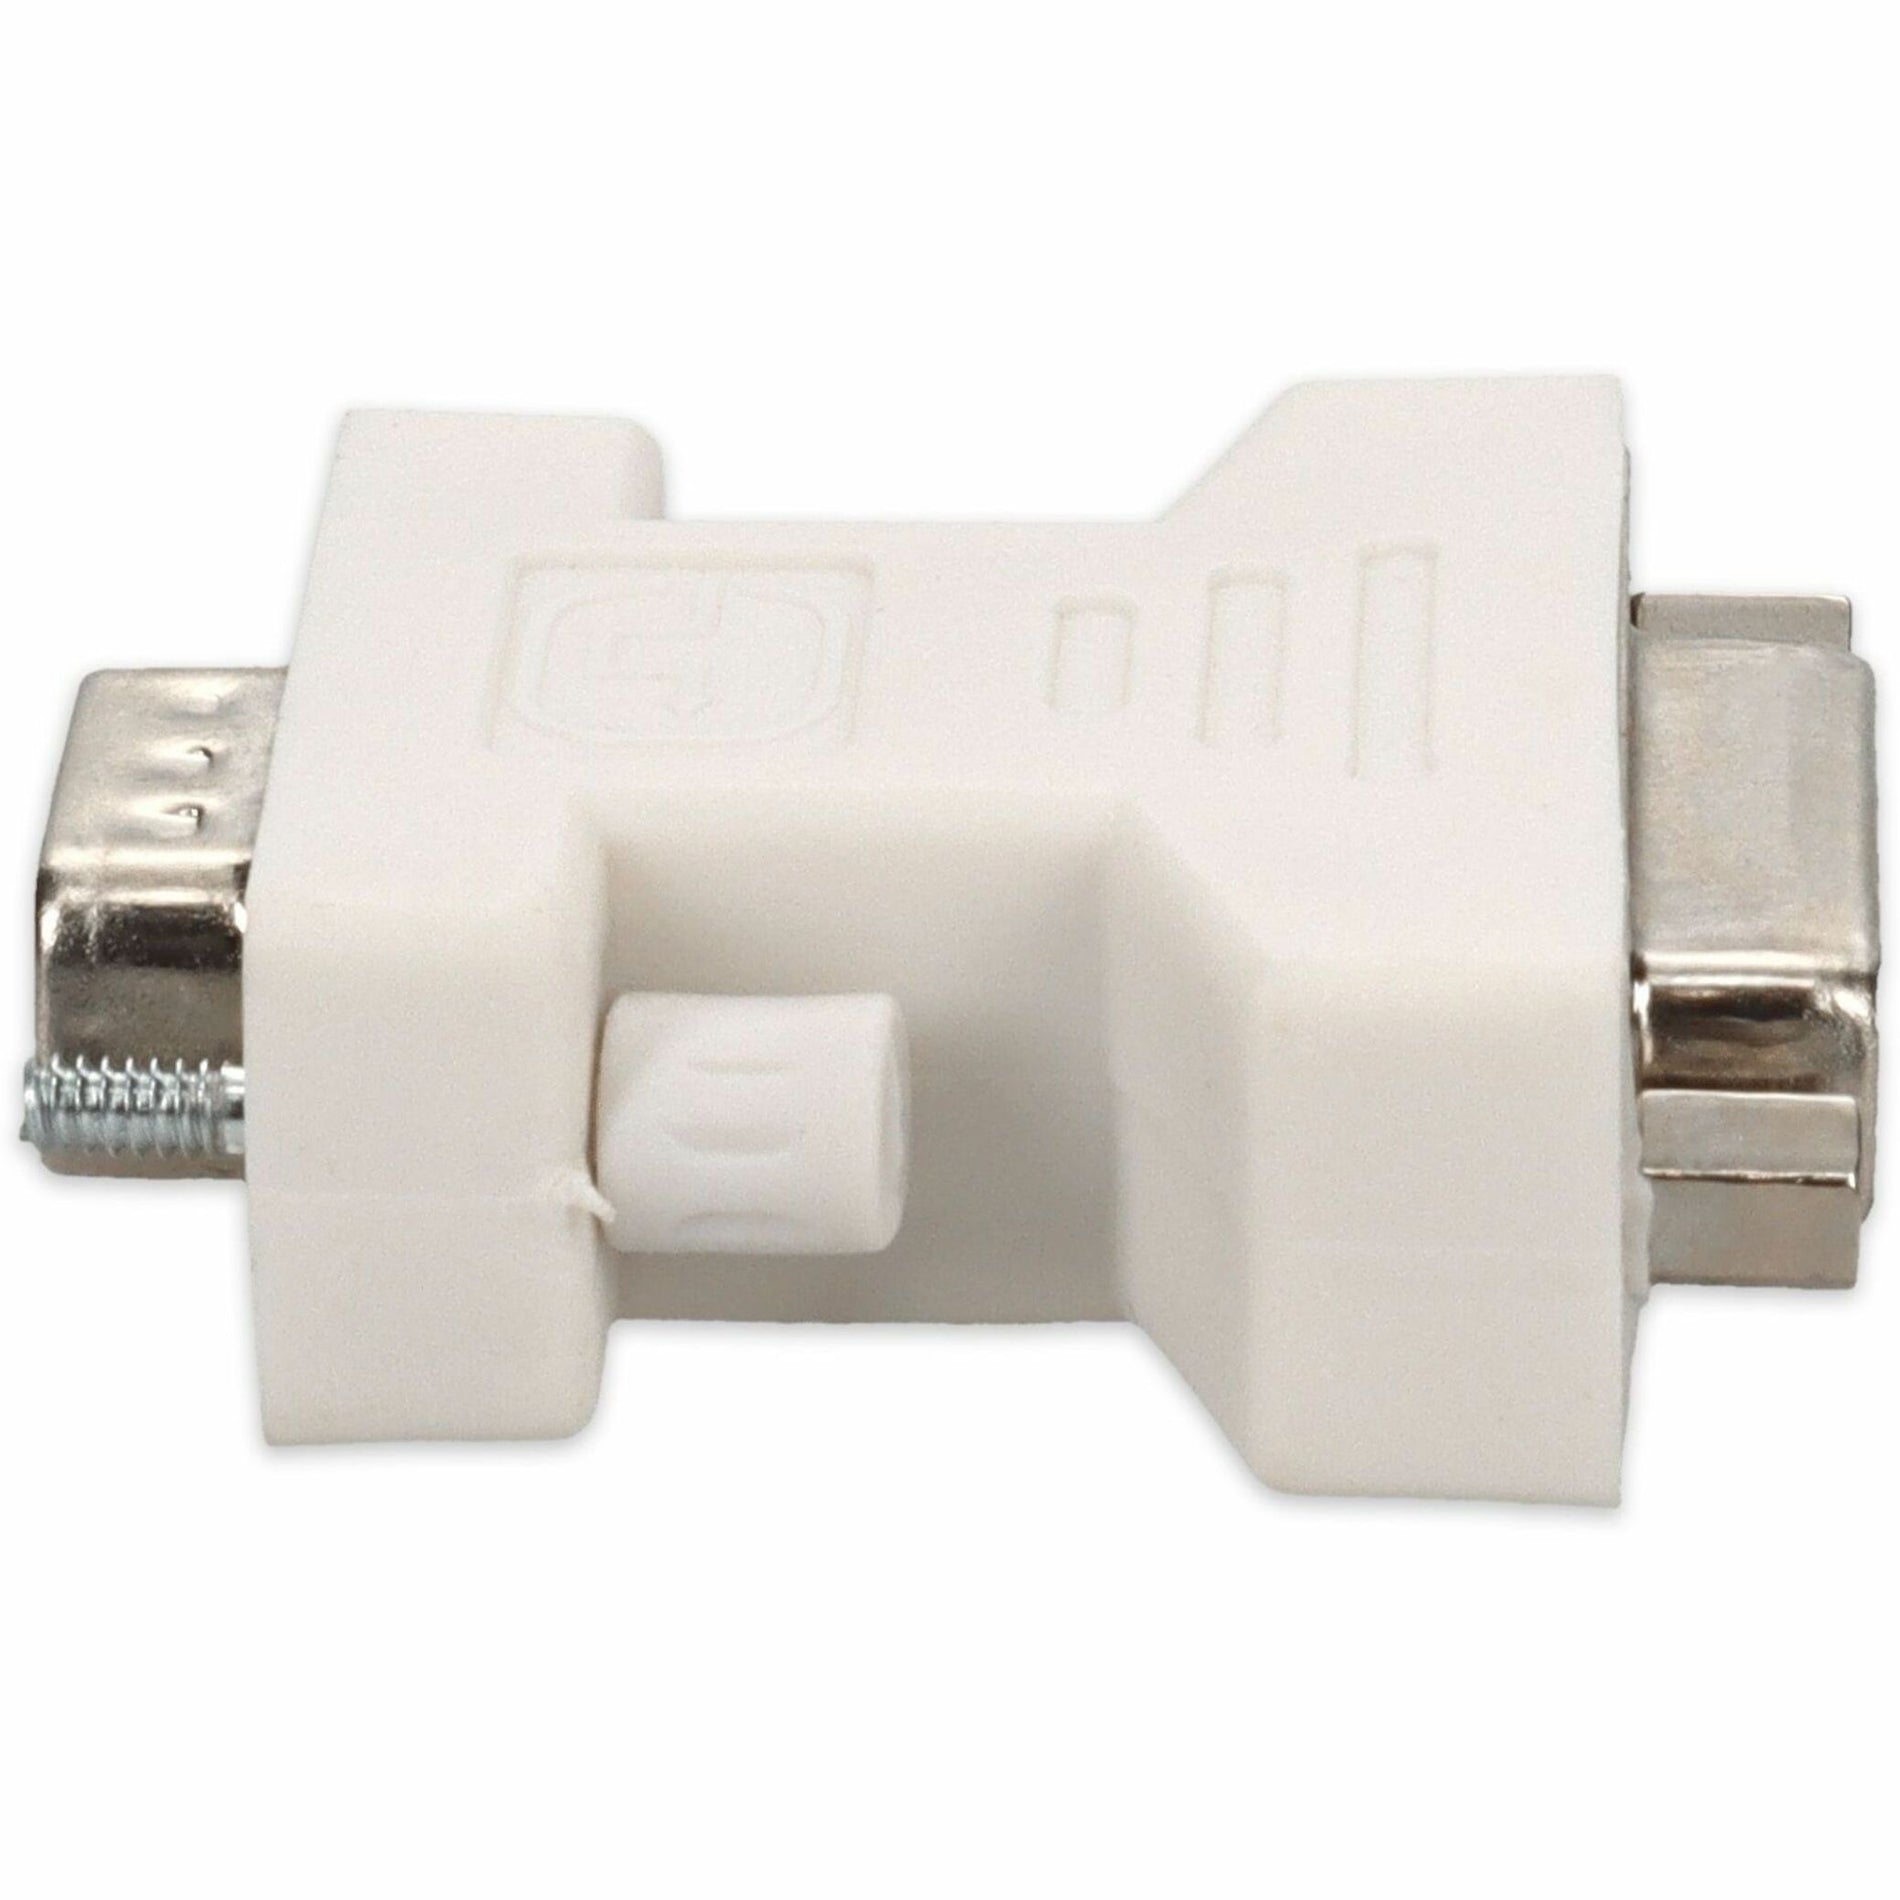 محول فيديو VGA/DVI VGA2DVIW، أبيض، متوافق مع DVI-D أنثى/ذكر العلامة التجارية: AddOn